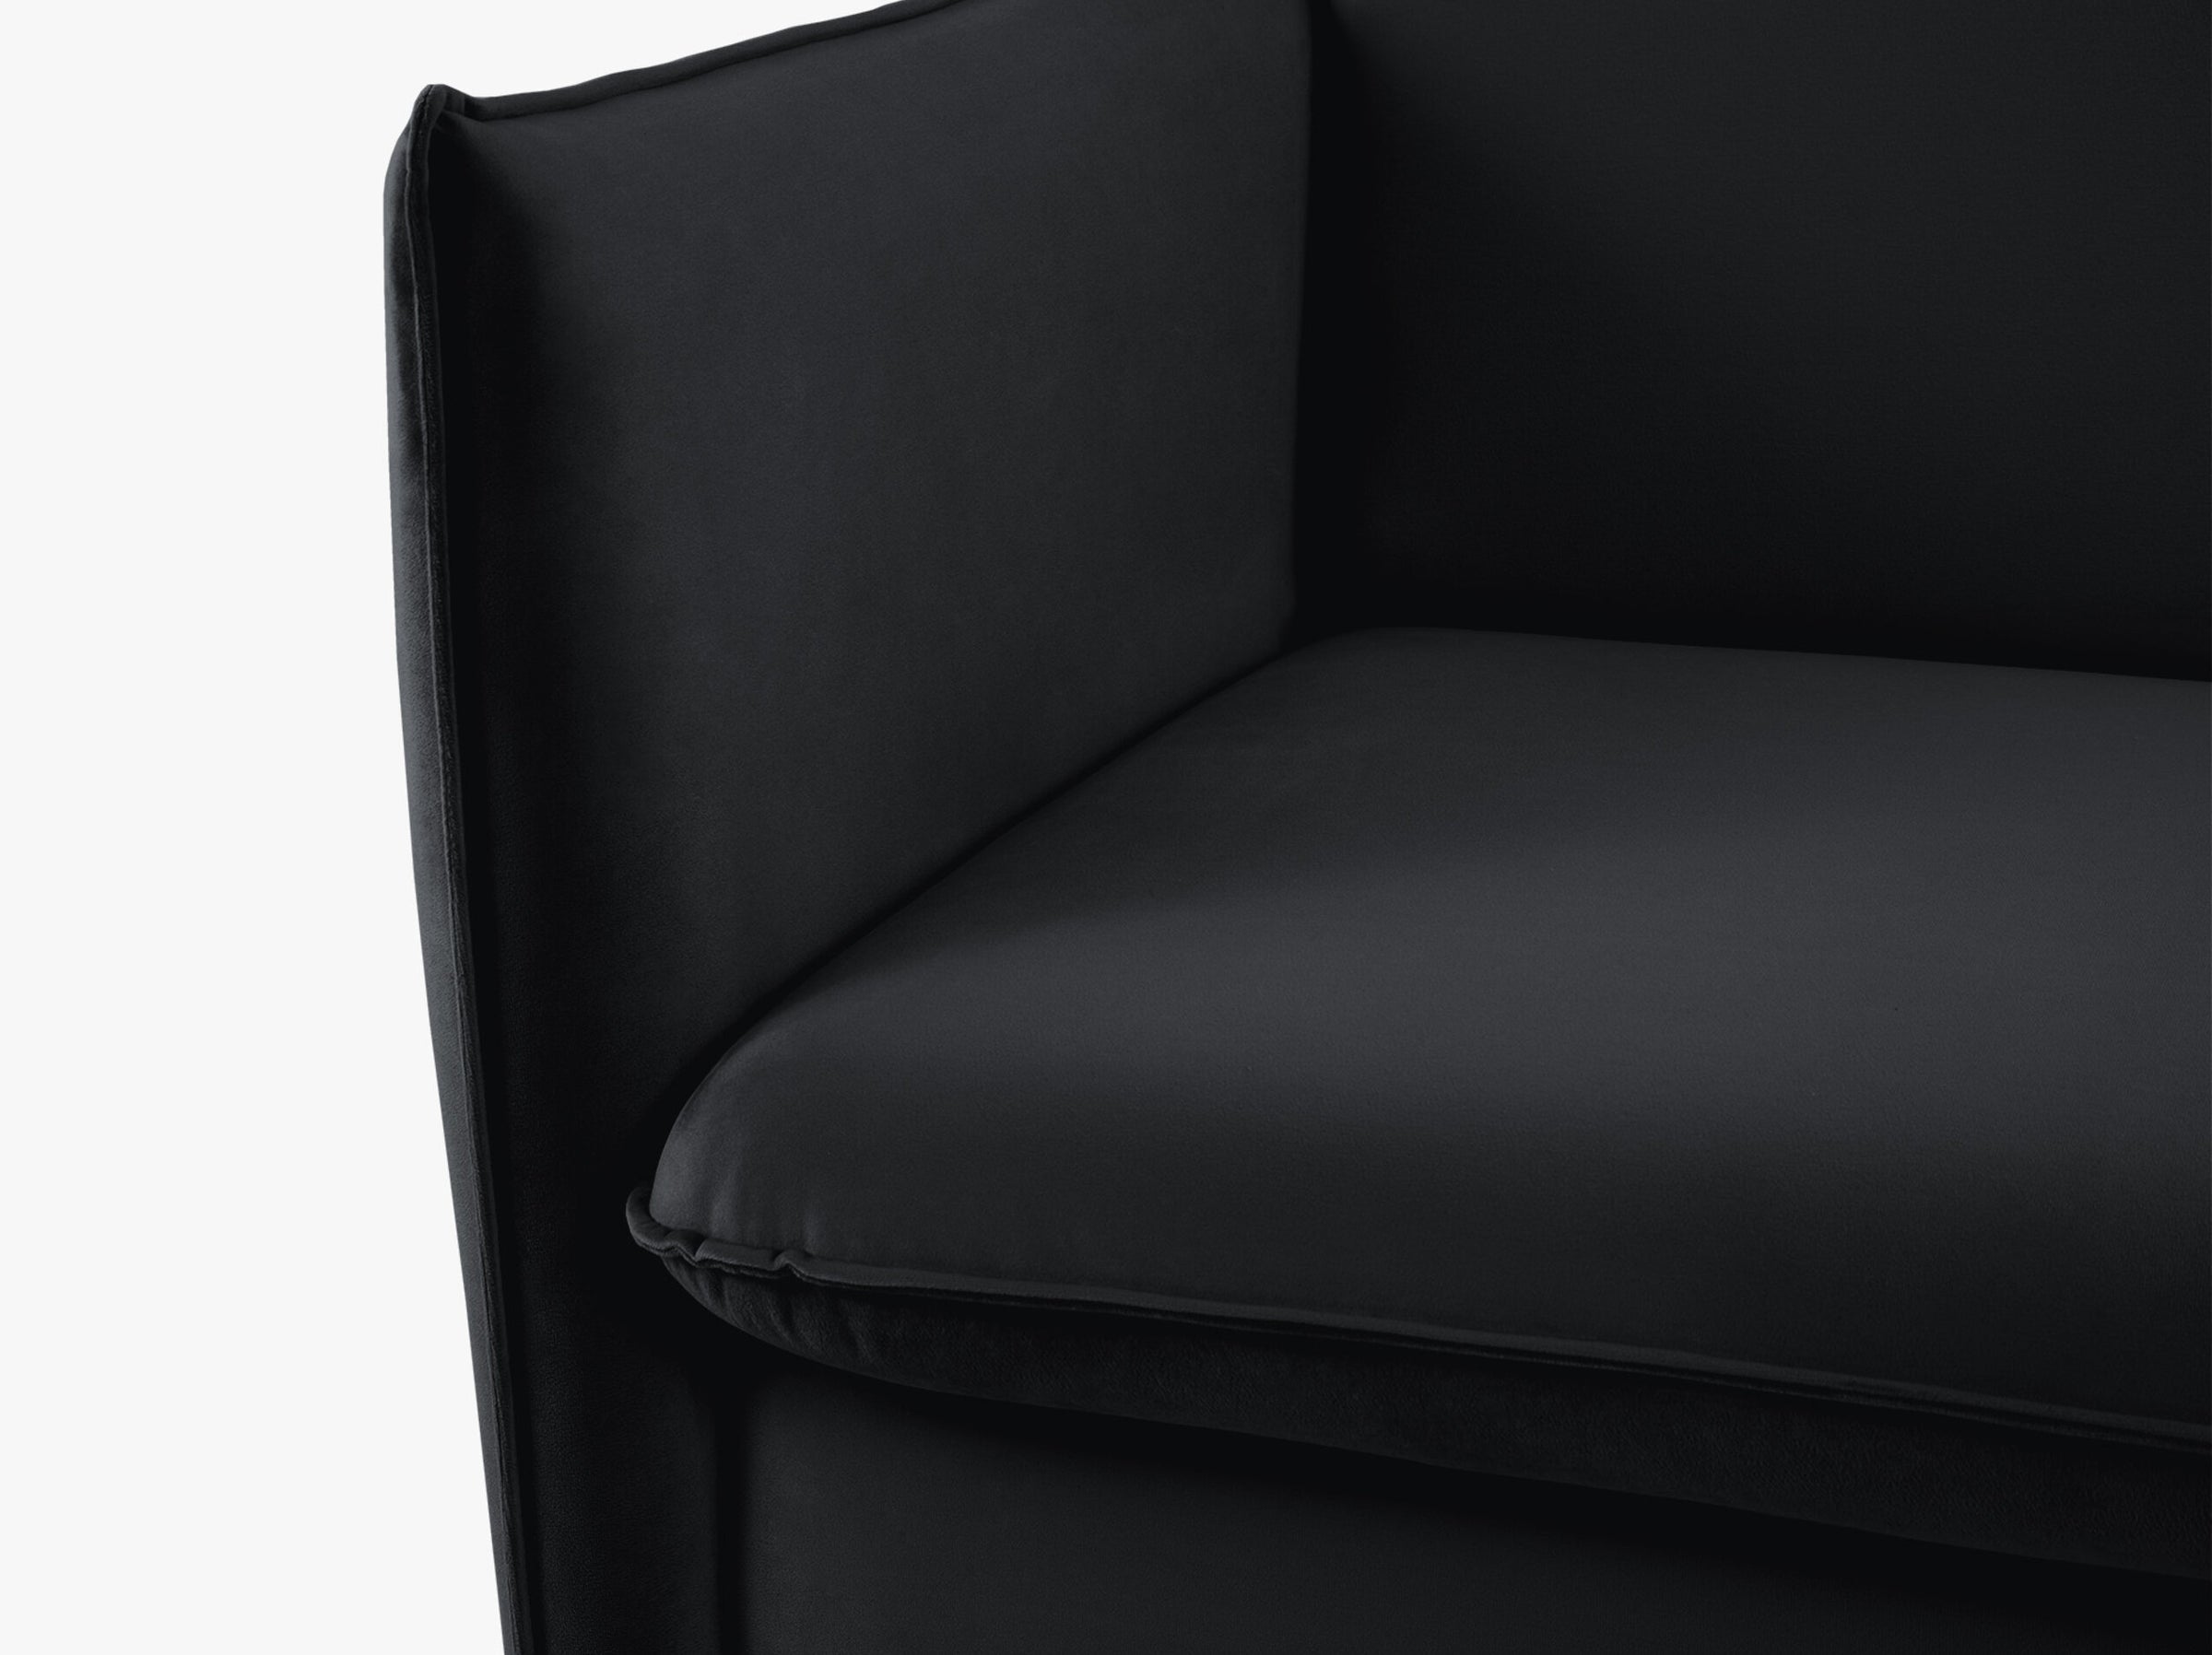 Agate sofas velvet black